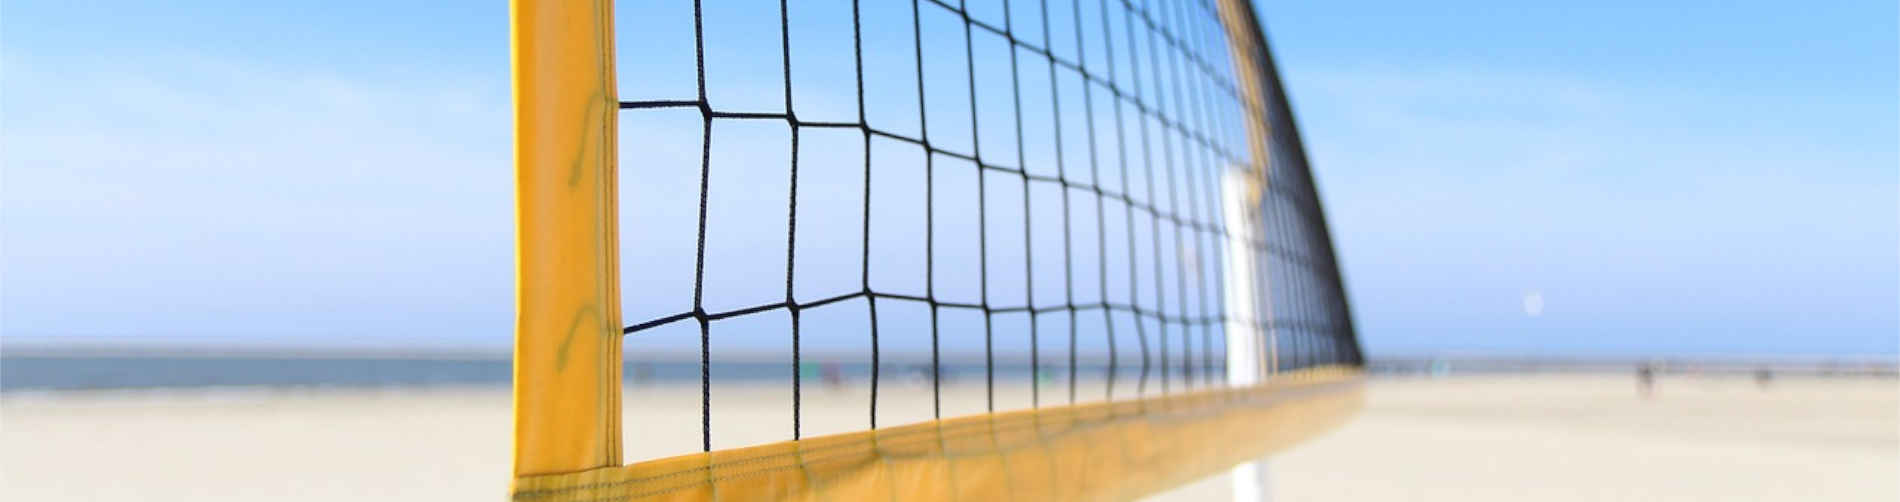 Volleyball: Energie, die übers Netz fliegt